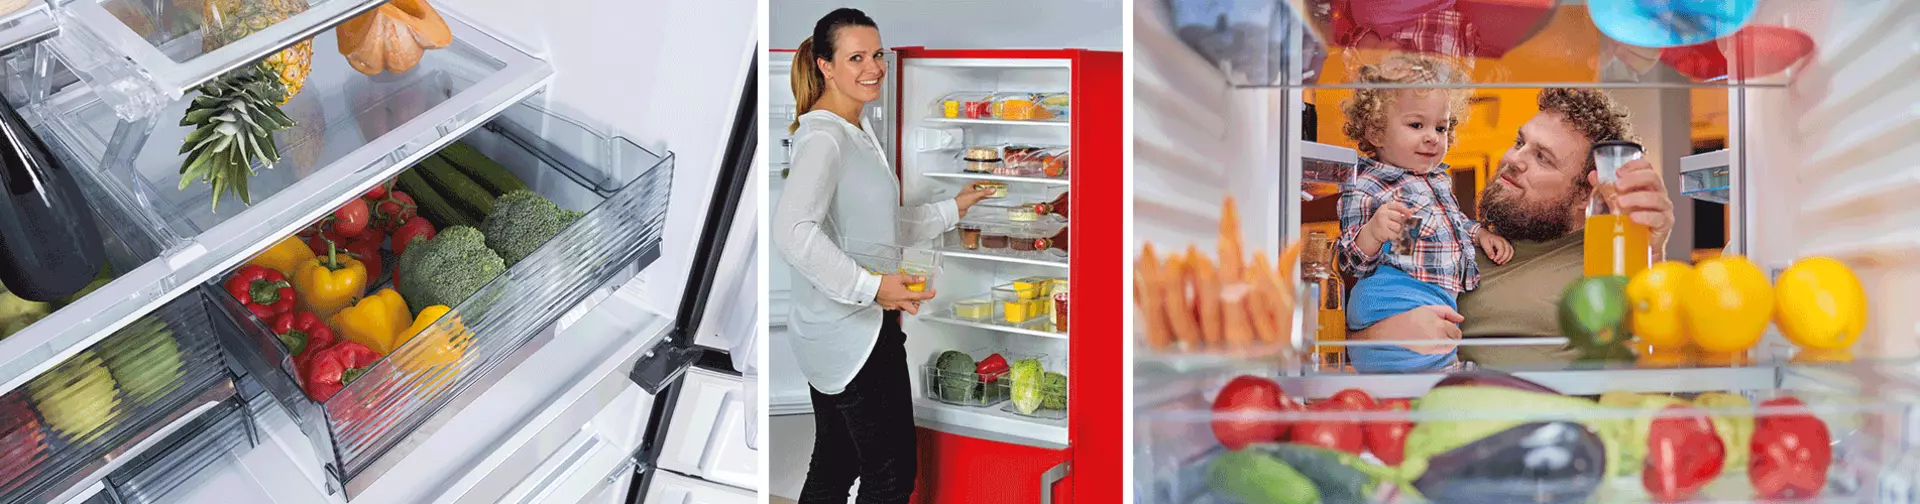 Möbel Inhofer informiert: was beim Kauf eines Einbaukühlschranks beachtet werden muss.